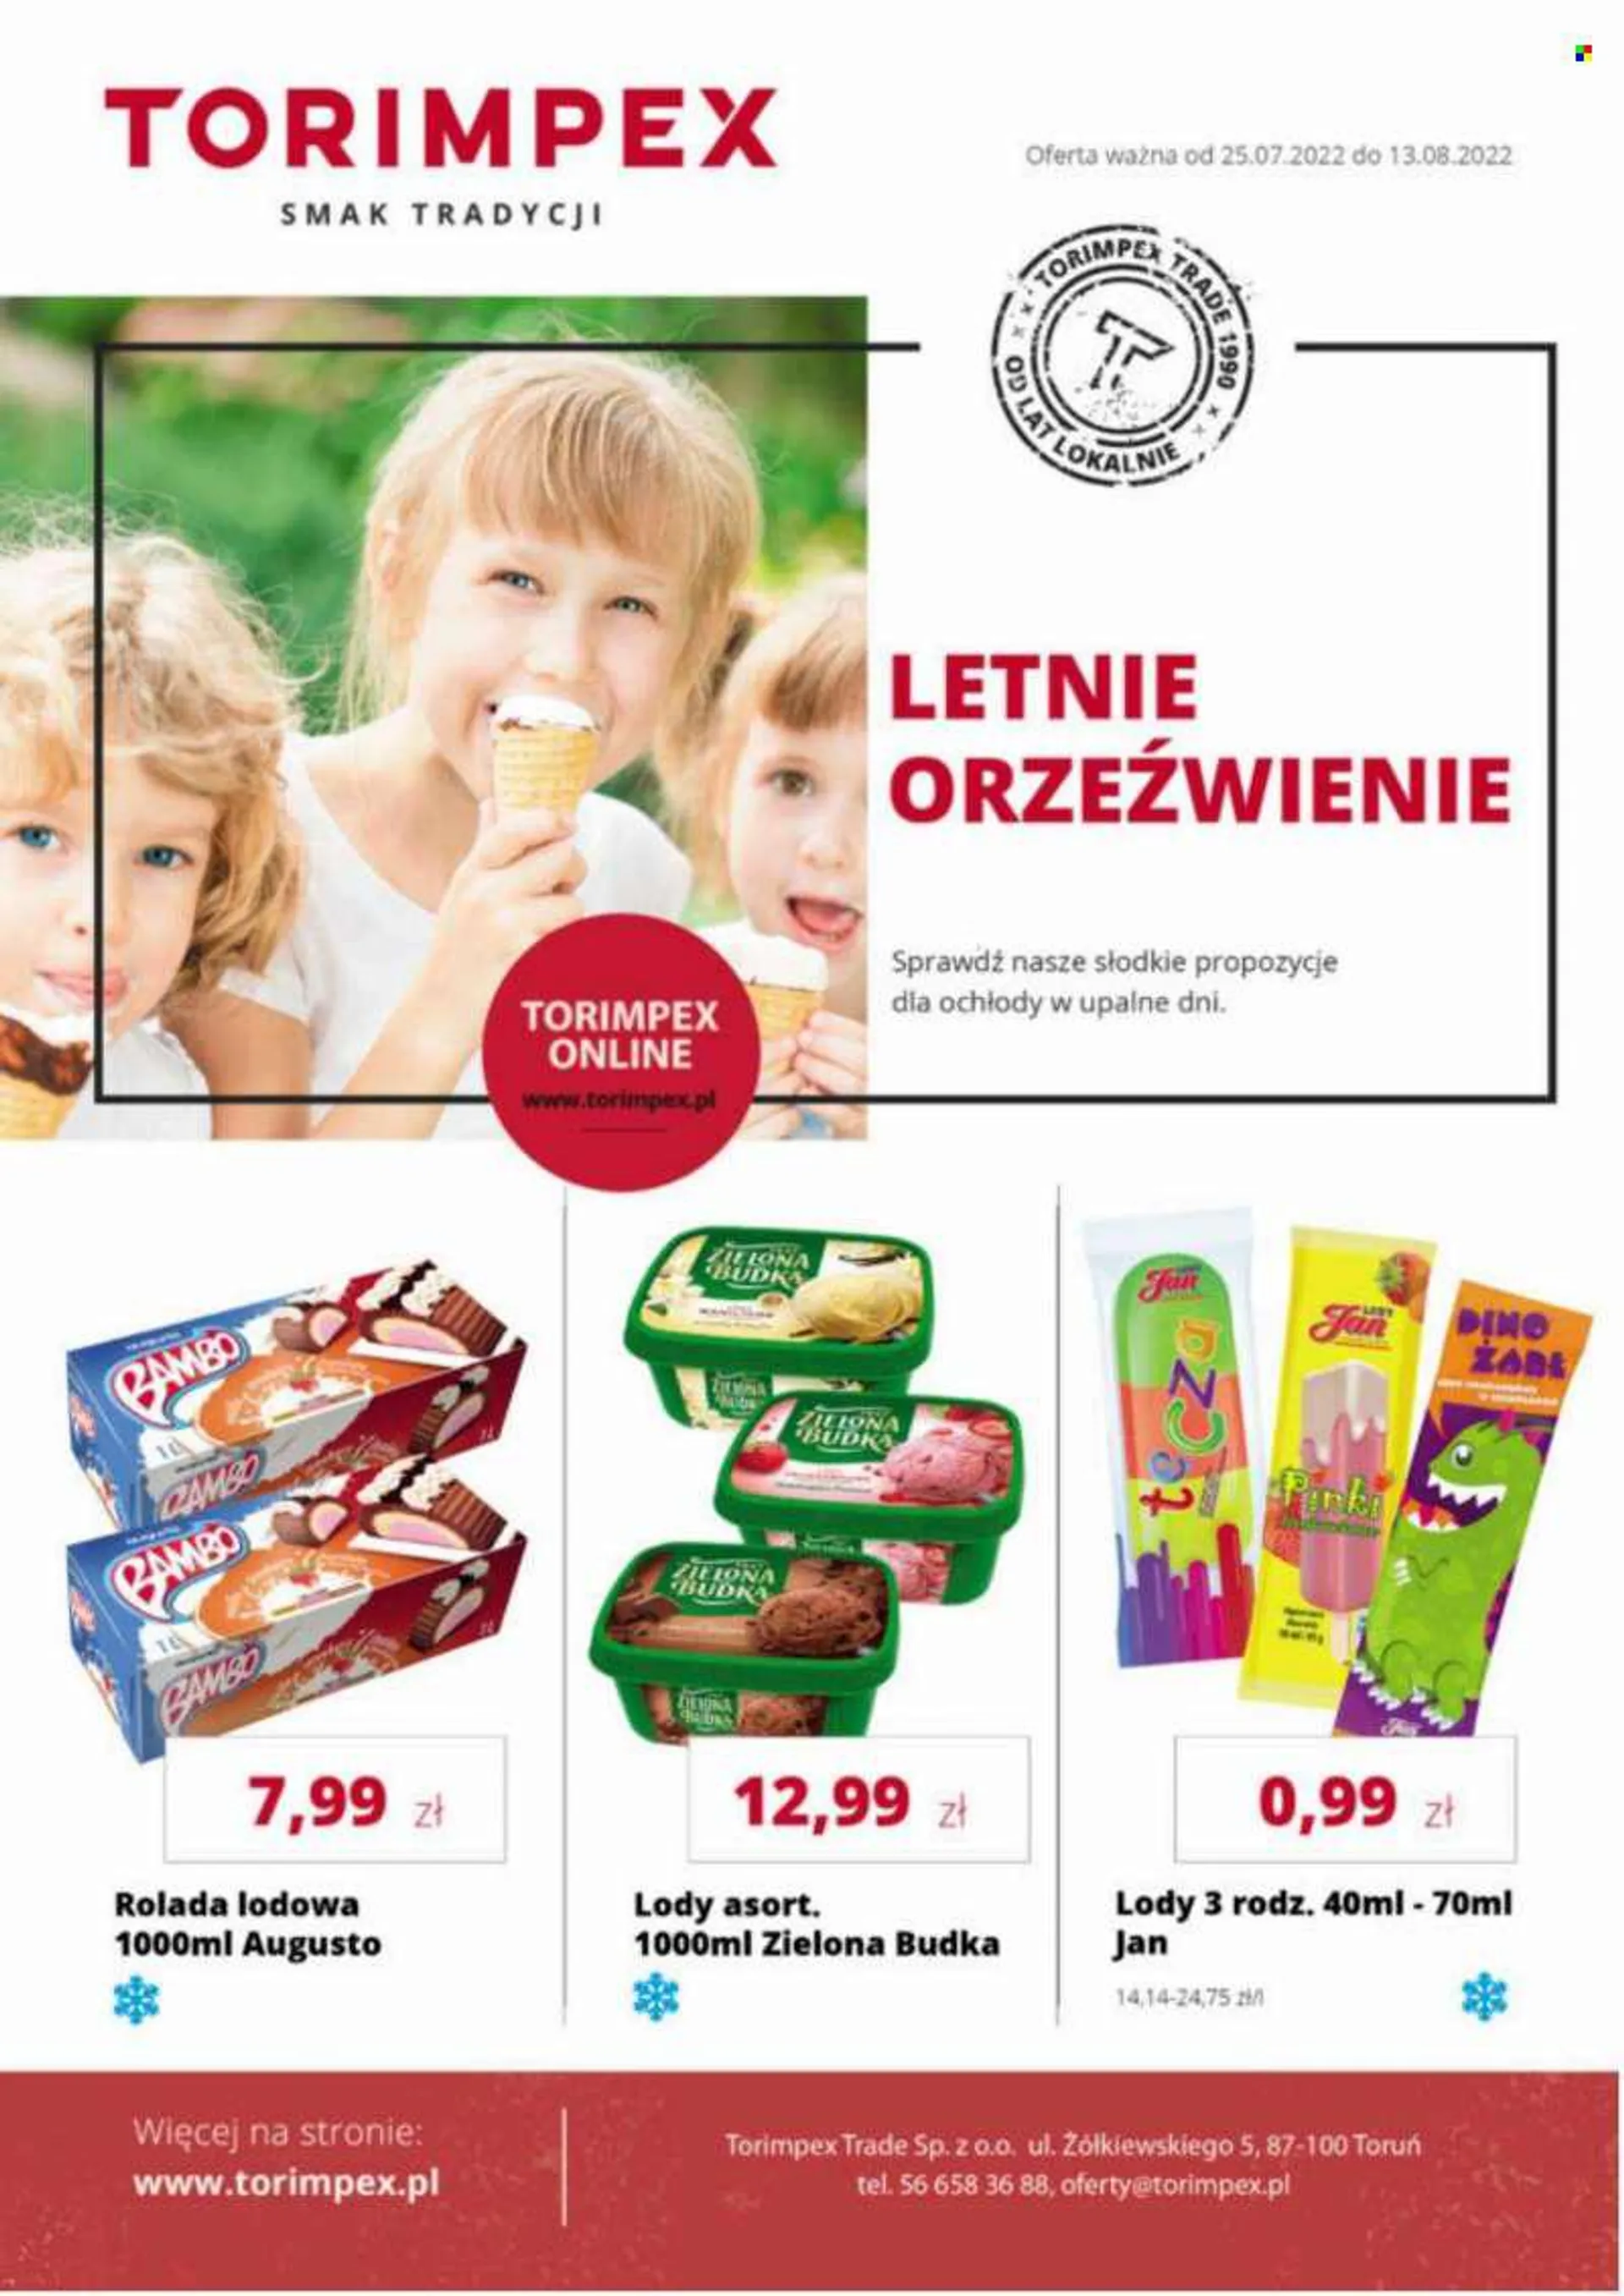 Gazetka Torimpex - 25.07.2022 - 13.08.2022 - Produkty w akcji - Zielona Budka, lody. Strona 1.